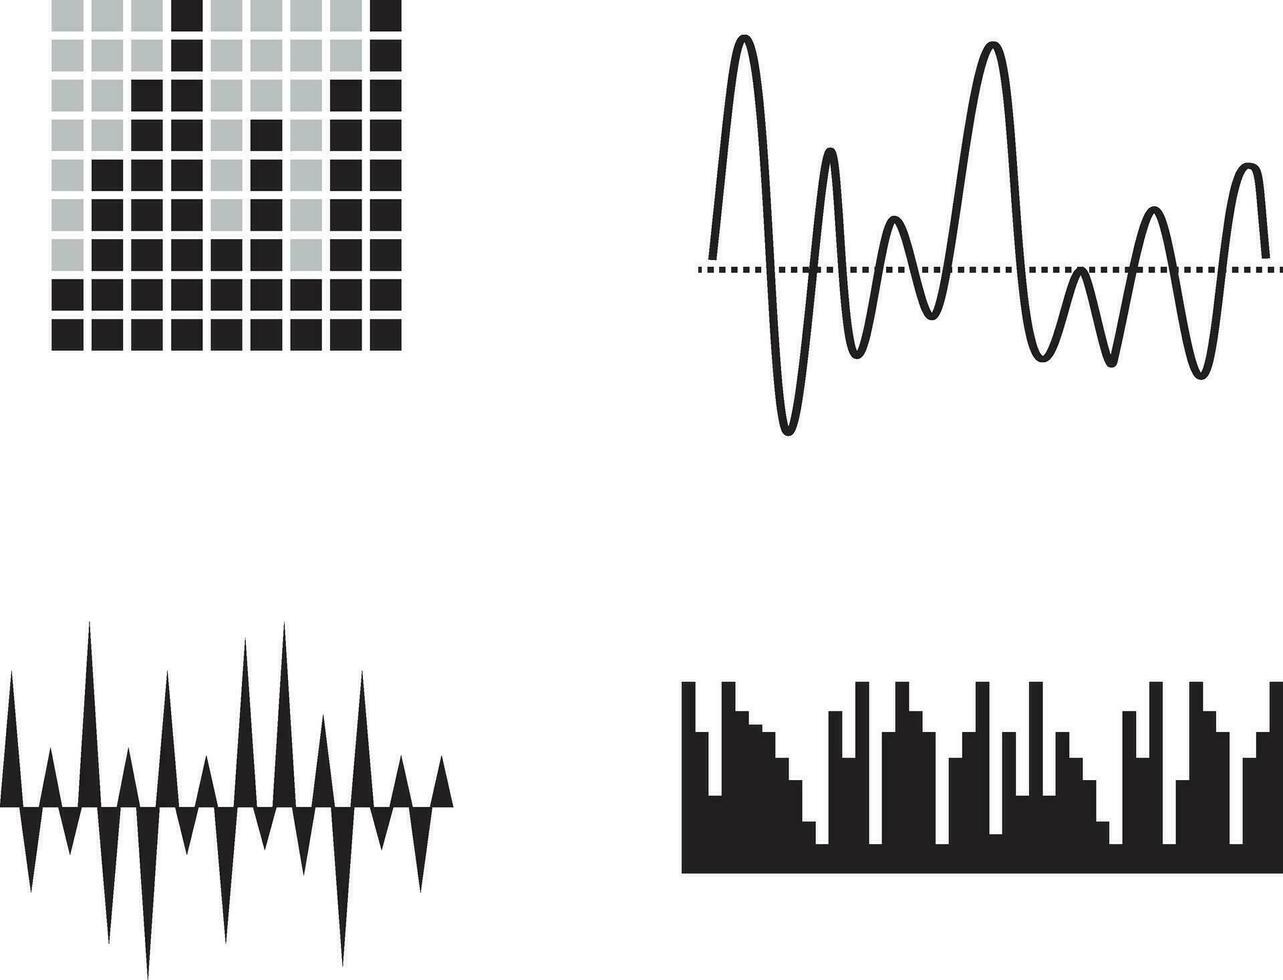 música sonido ola. gráfico diseño elemento para, música aplicaciones aislado vector ilustración.